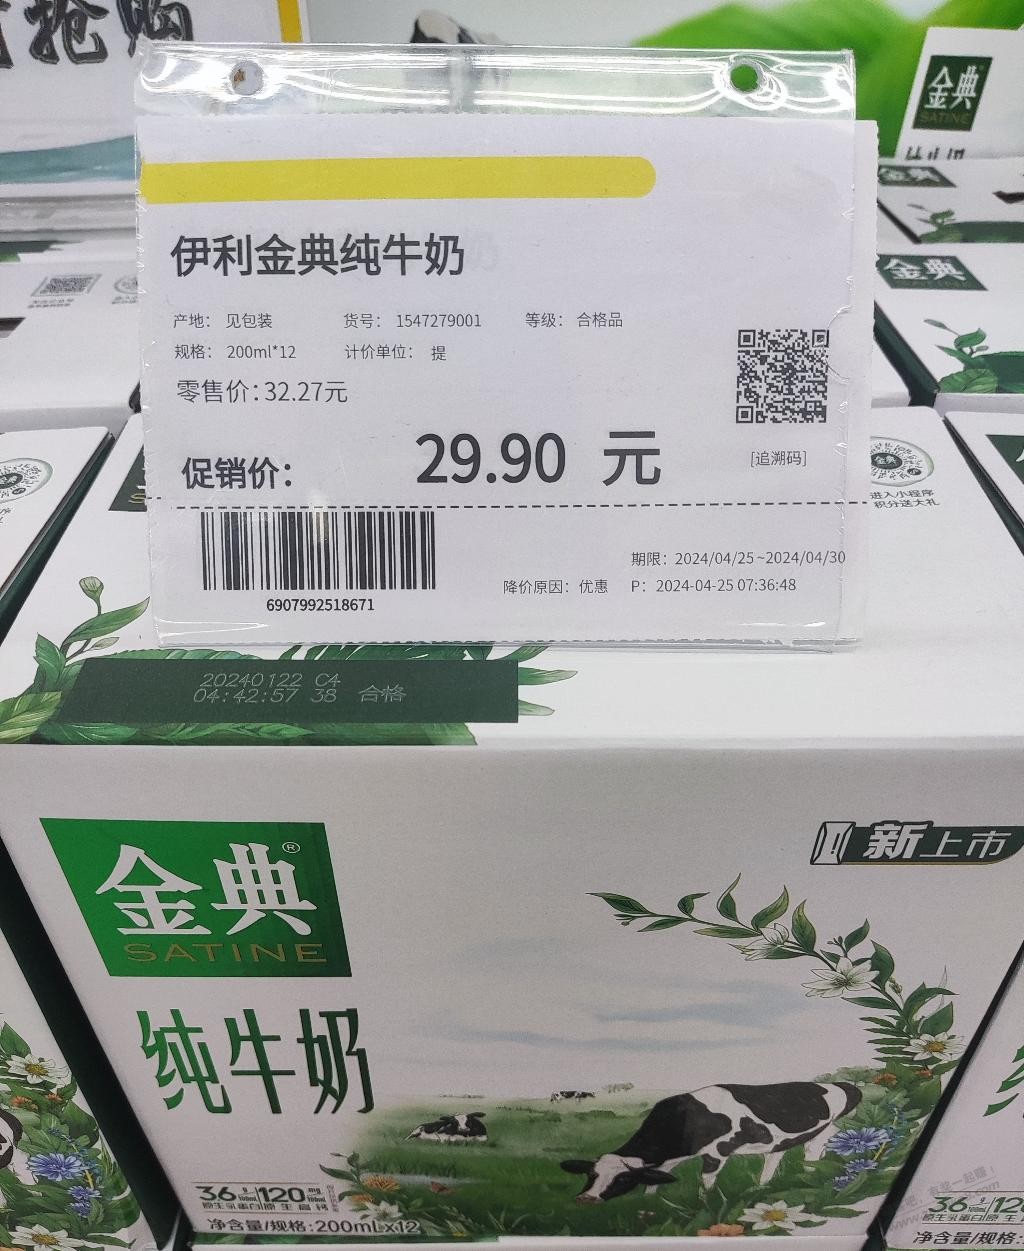 超市的牛奶也挺便宜的啊-惠小助(52huixz.com)